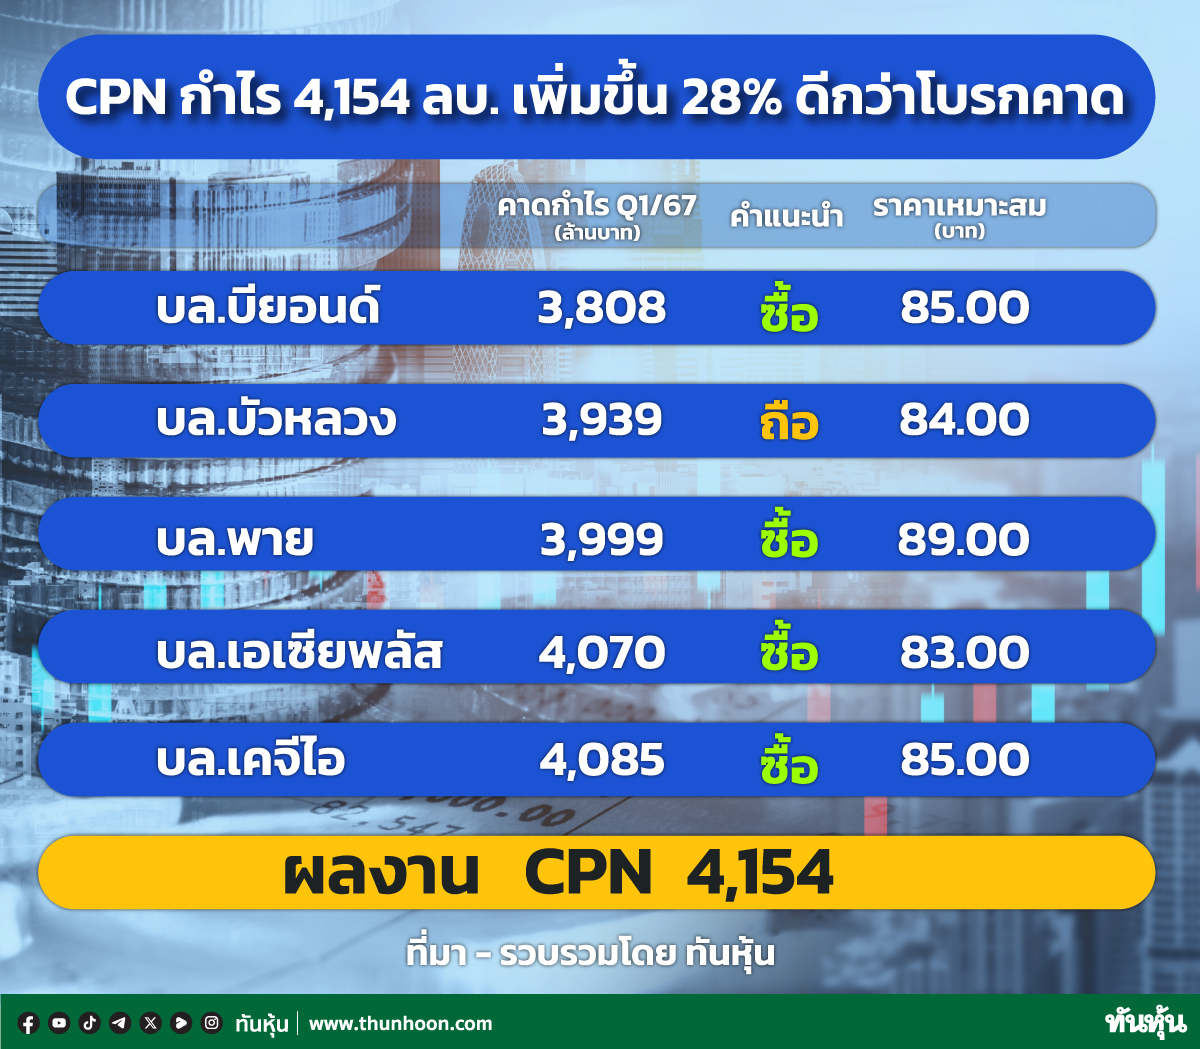 CPN กำไร 4,154 ลบ. เพิ่มขึ้น 28% ดีกว่าโบรกคาด